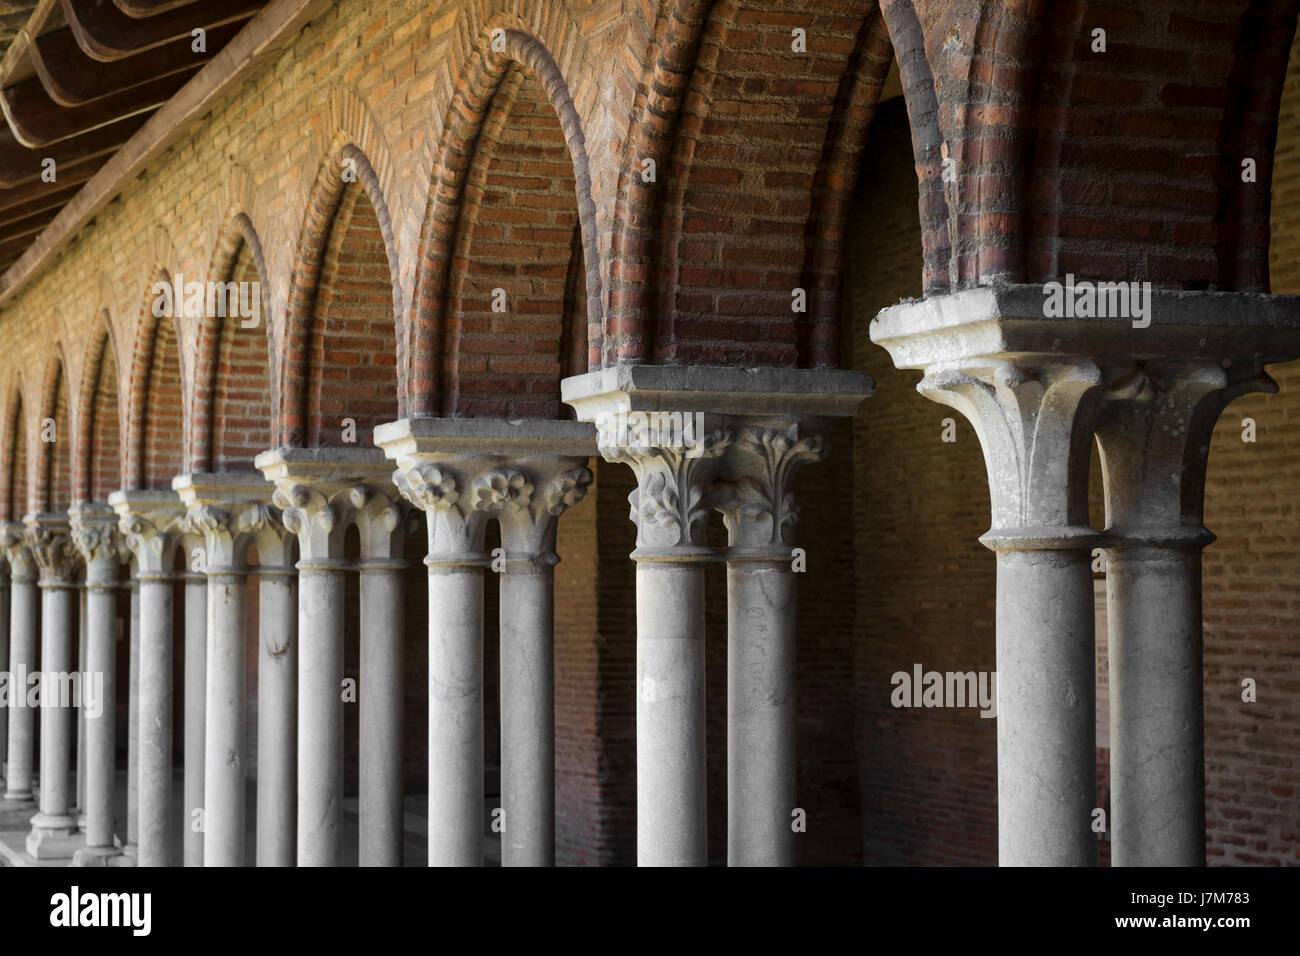 Le colonne e gli archi del chiostro nel vecchio monastero domenicano Couvent des giacobini di Tolosa, Francia. Dettagli architettonici. Foto Stock